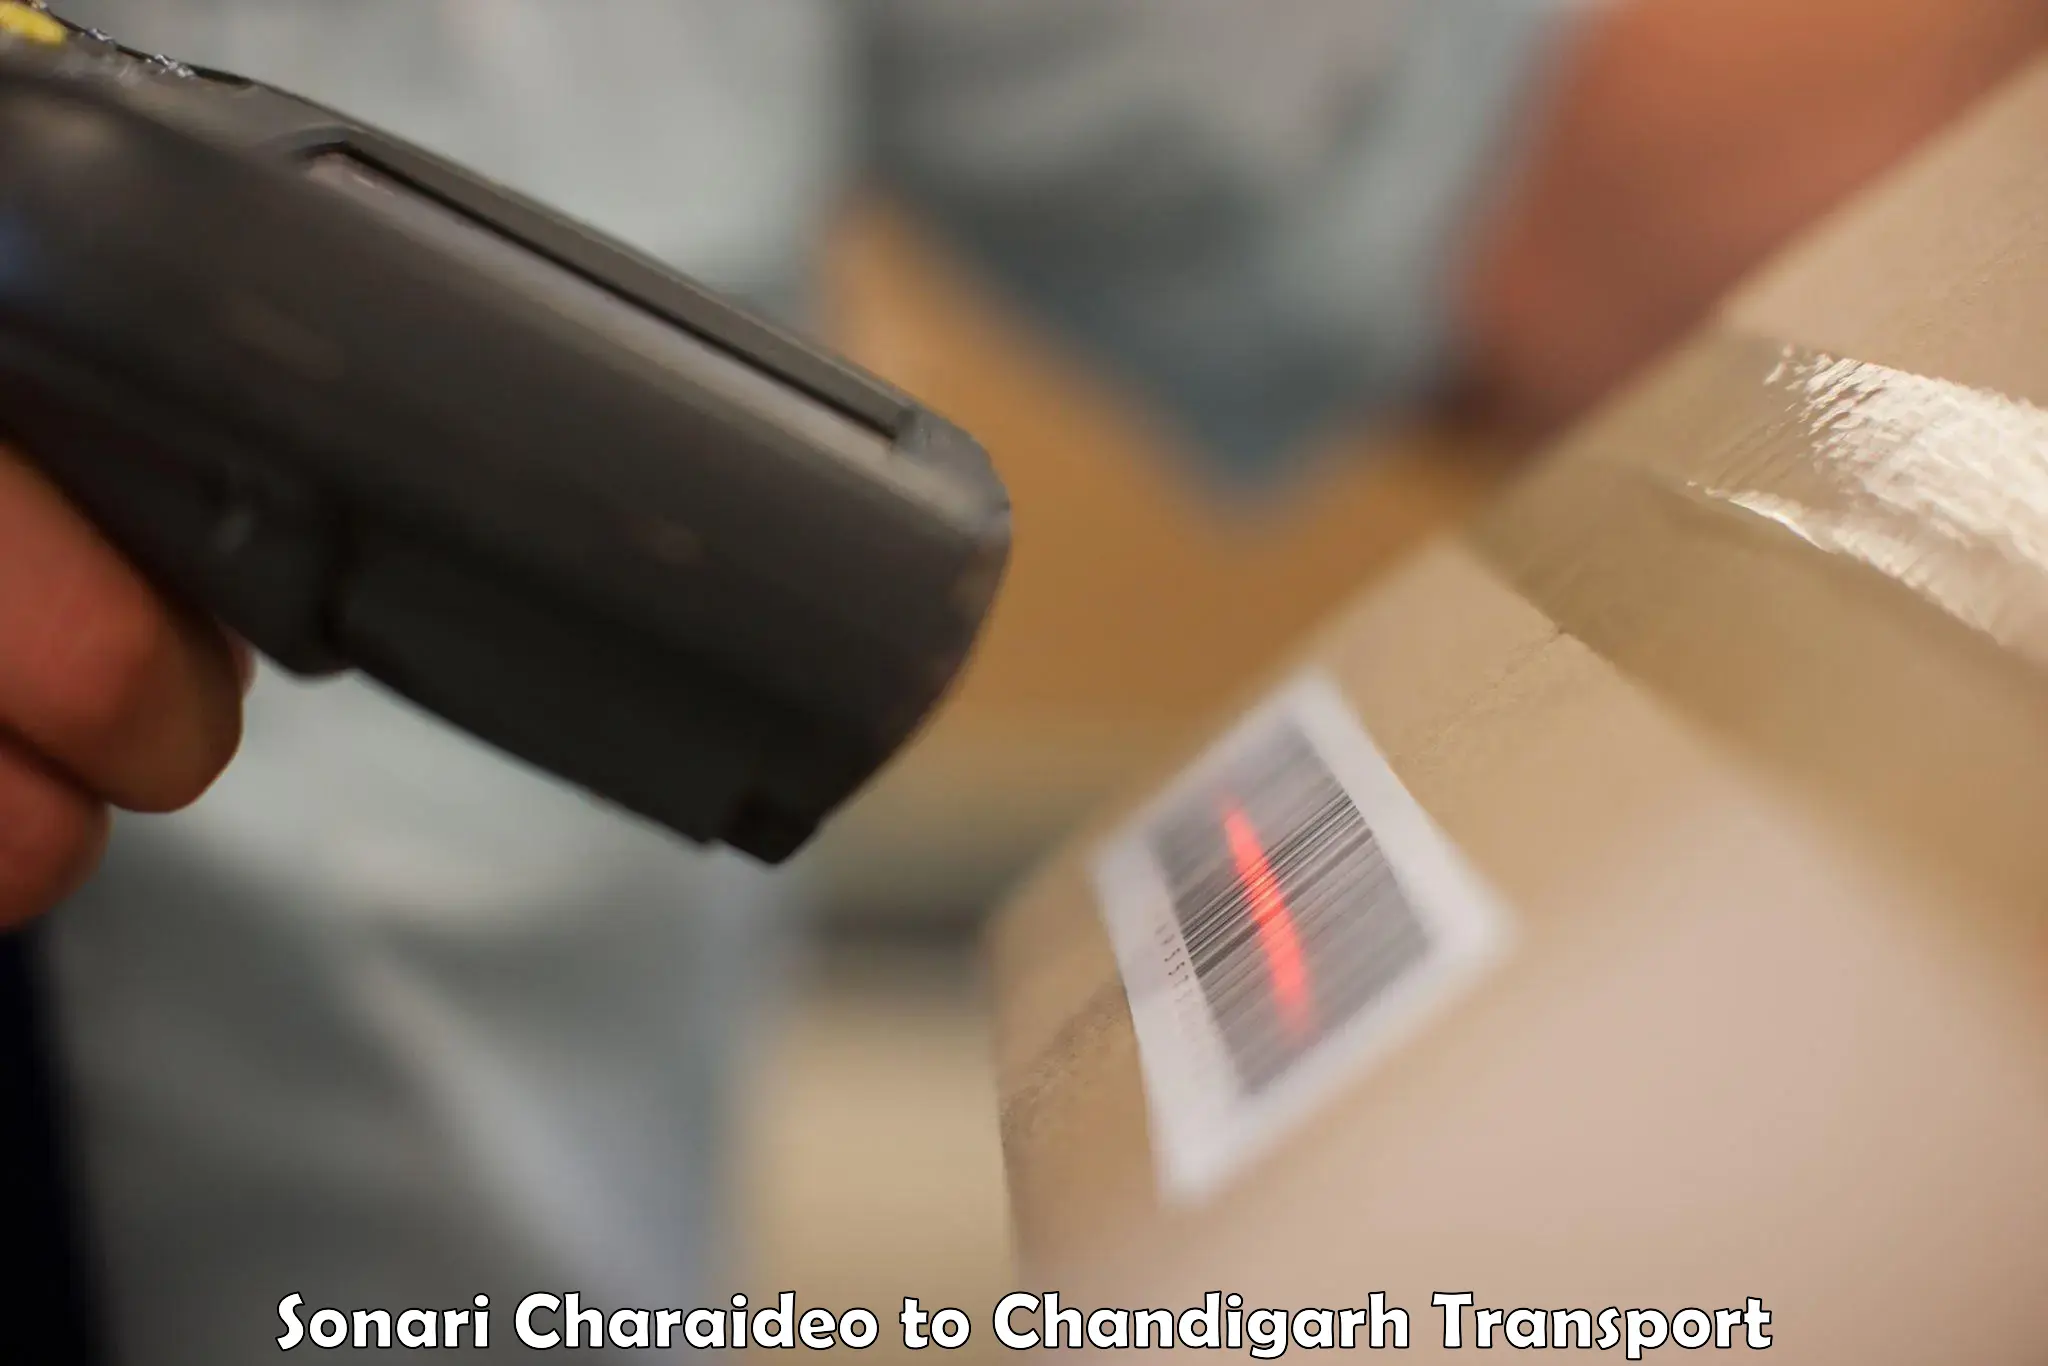 Furniture transport service Sonari Charaideo to Chandigarh